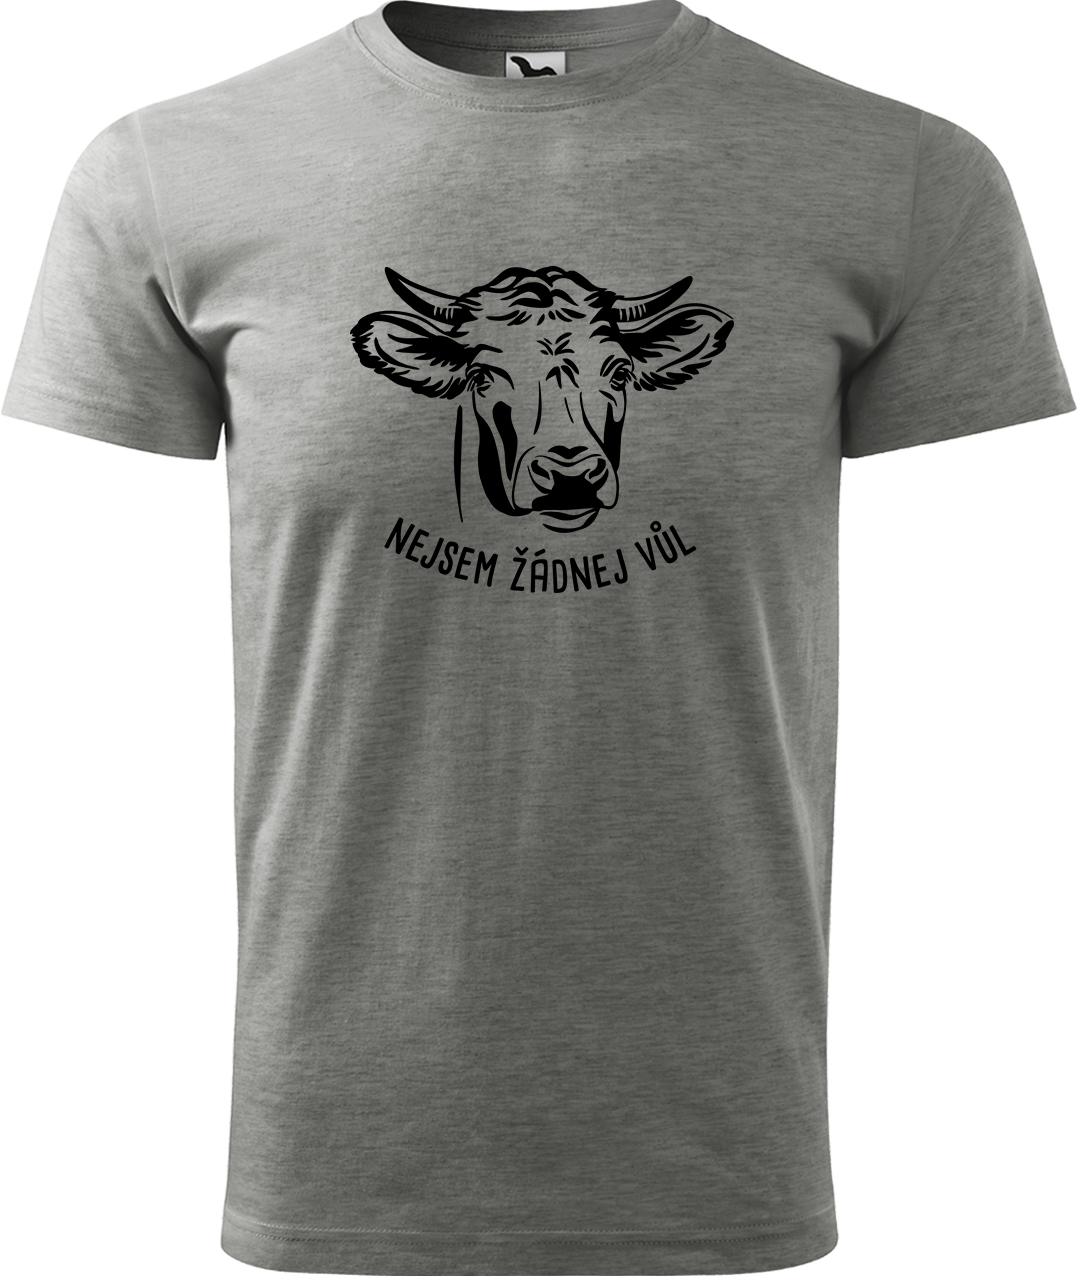 Pánské tričko s krávou - Nejsem žádnej vůl Velikost: 3XL, Barva: Tmavě šedý melír (12)